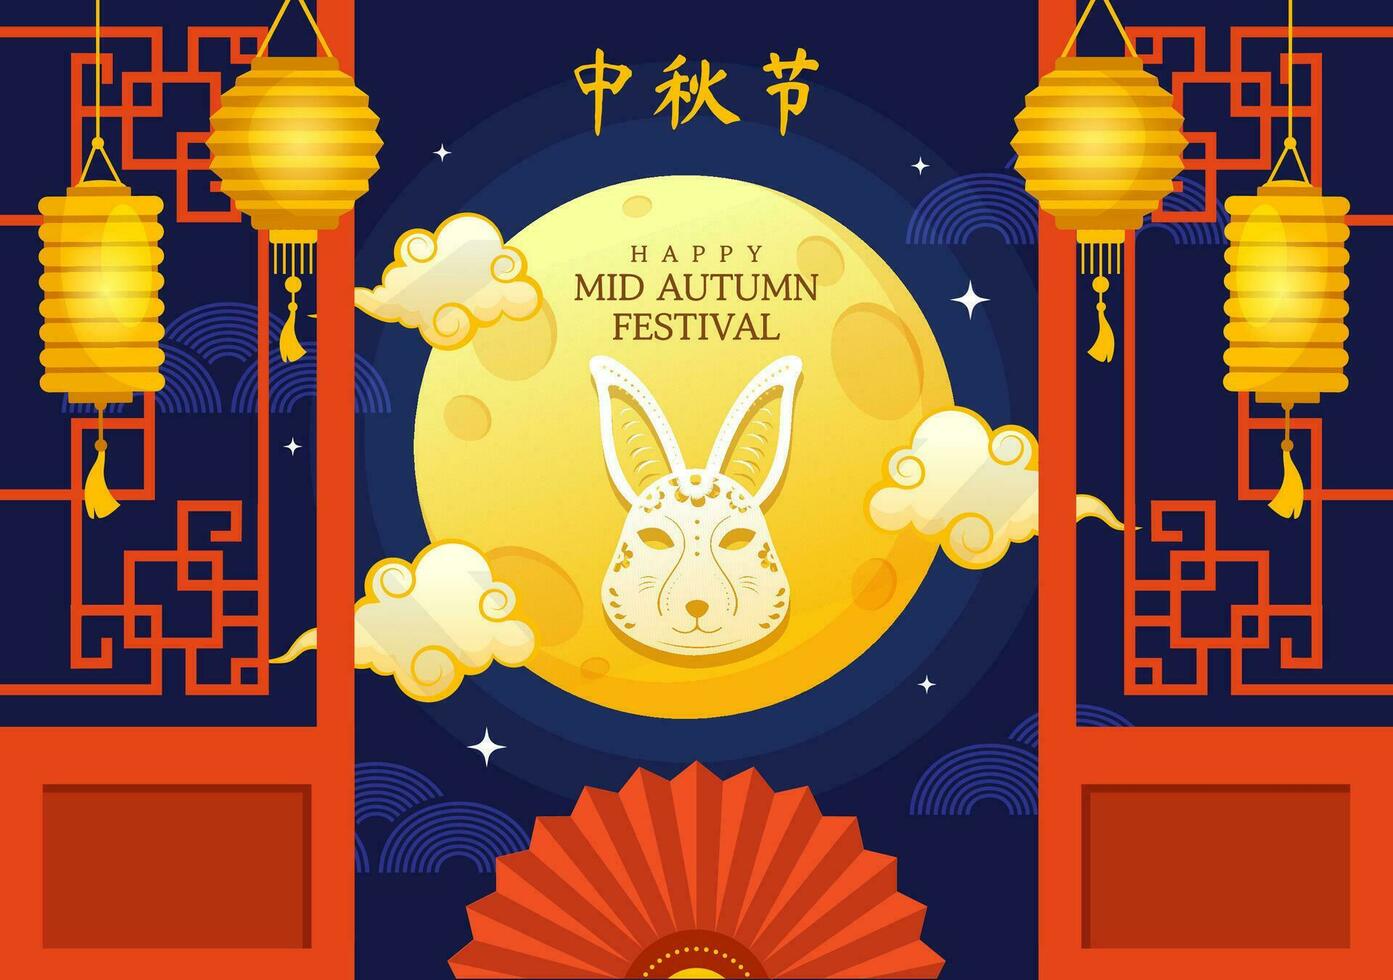 contento medio otoño festival vector ilustración con conejos que lleva linternas y disfrutar Pastel de luna celebrar en el noche de el lleno Luna plantillas